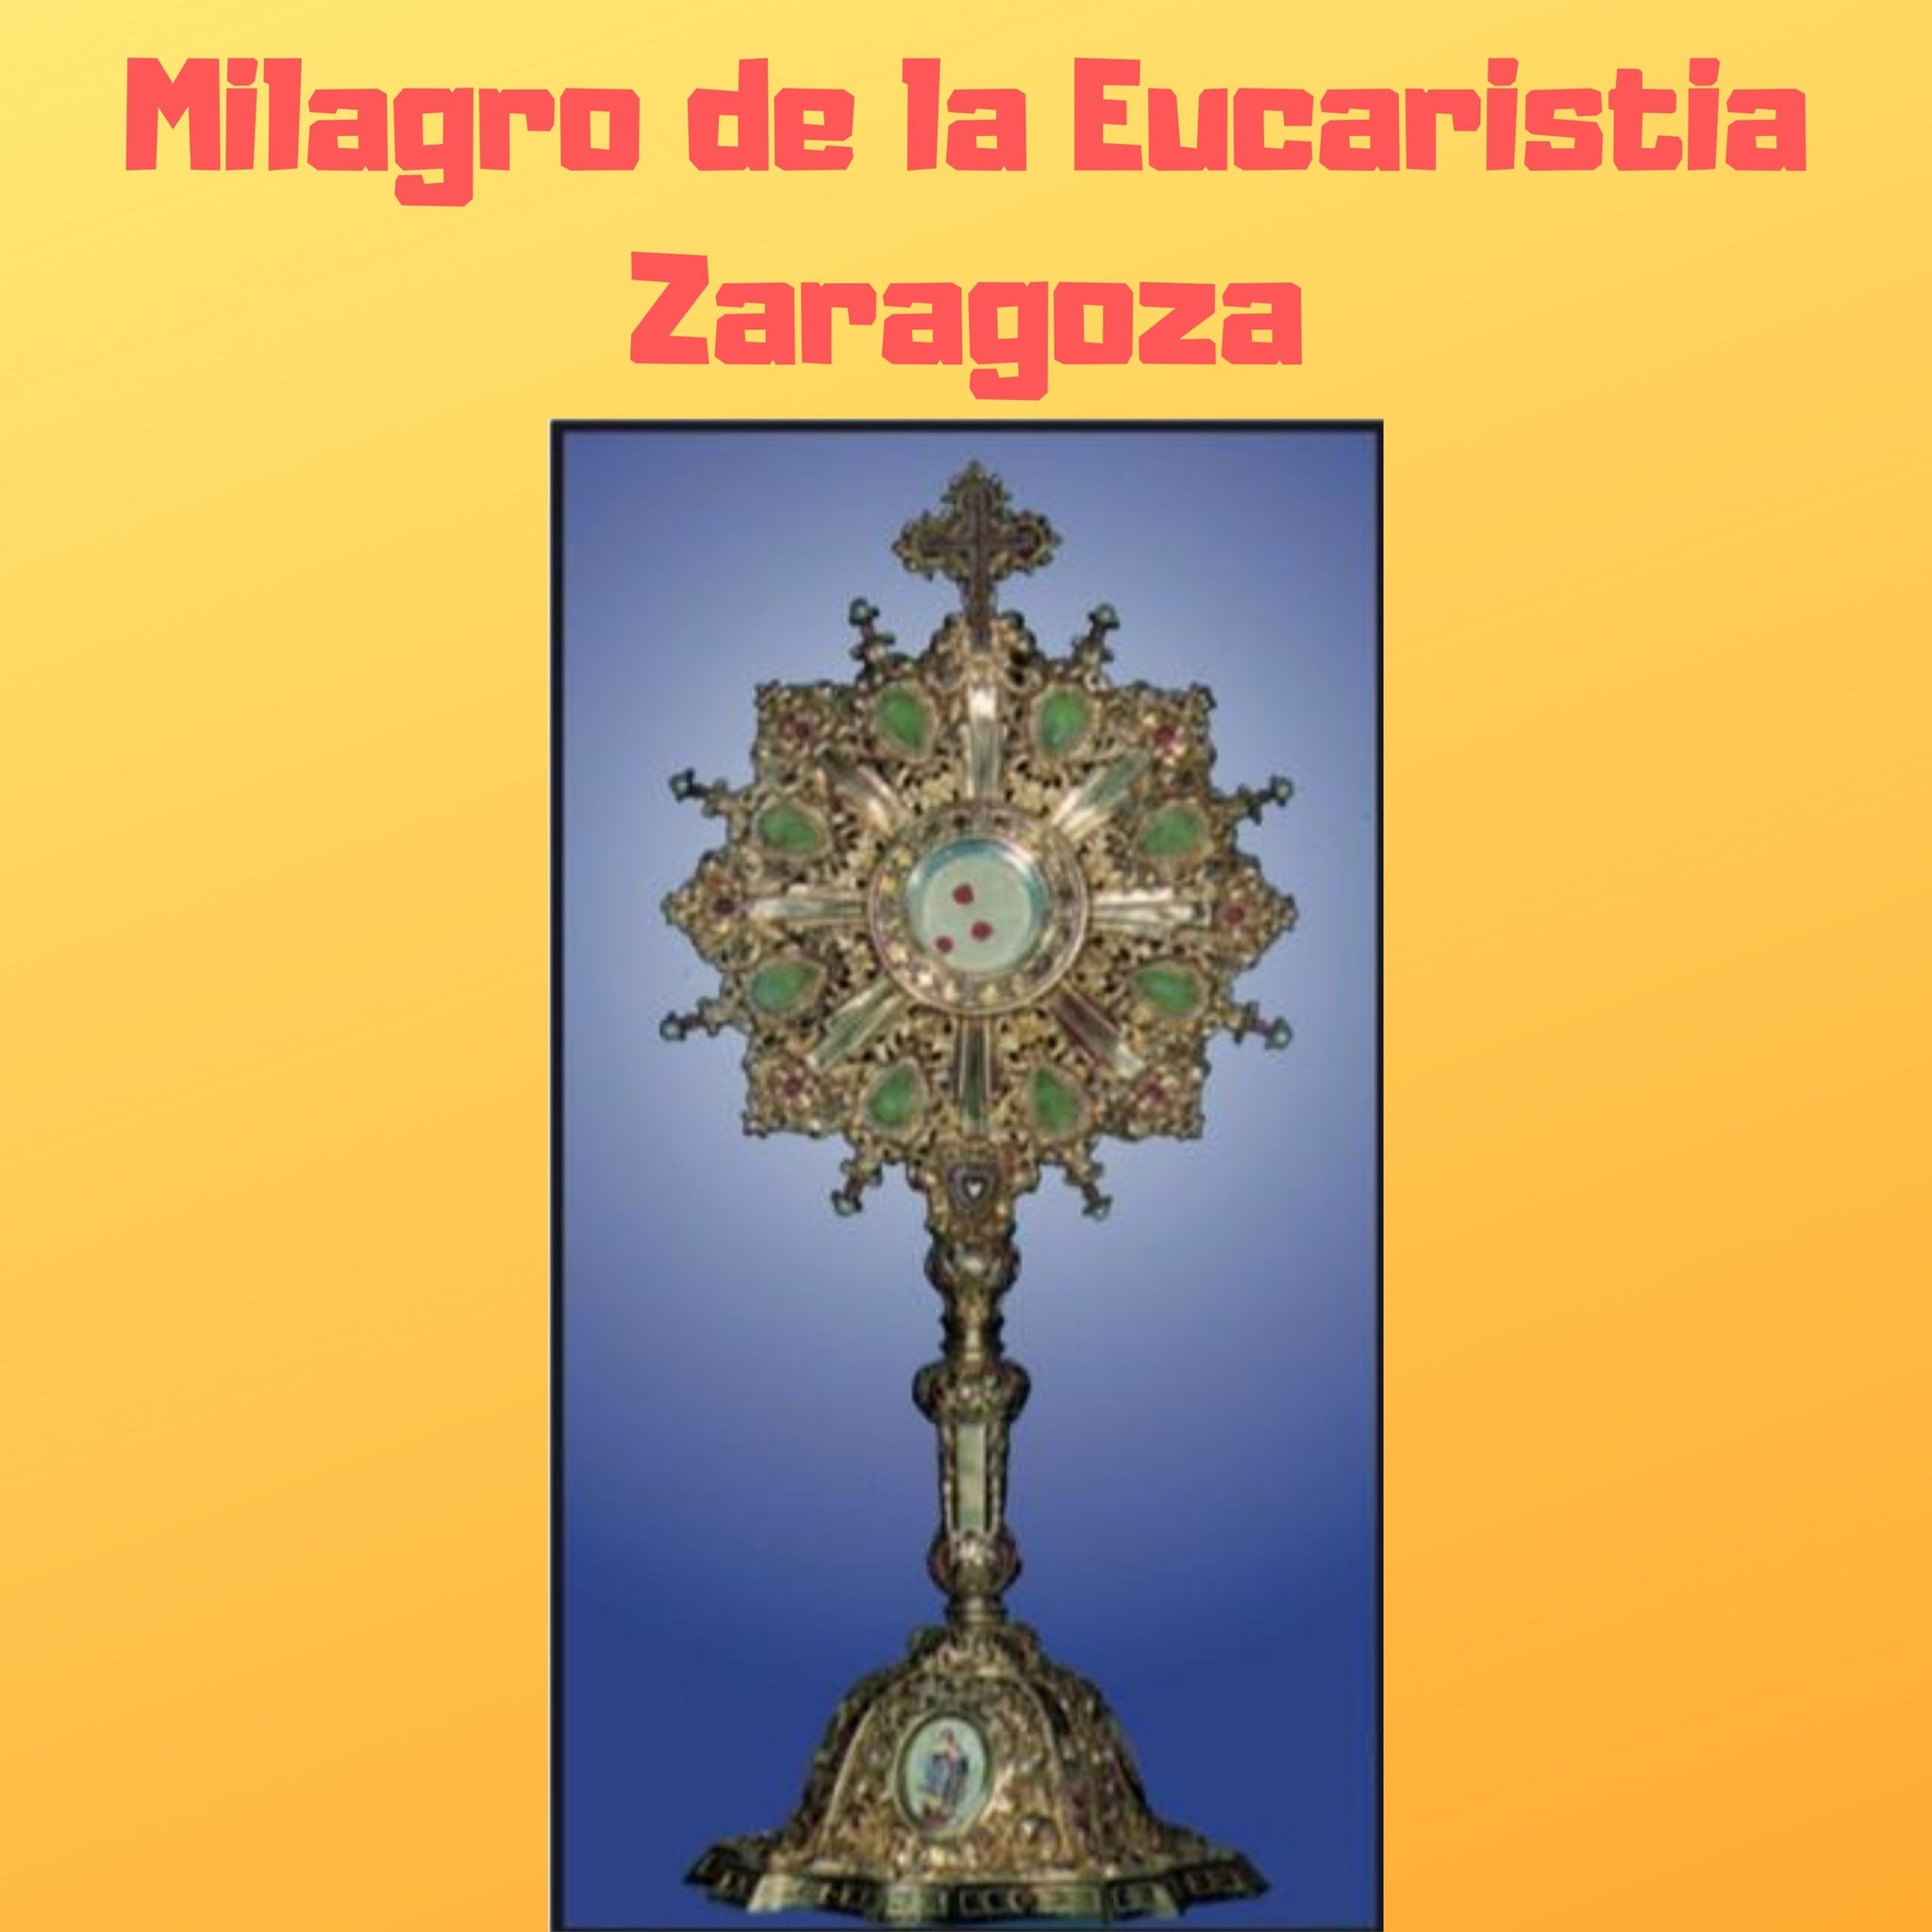 Milagro de la Eucaristia Zaragoza Audiobook - Bob and Penny Lord